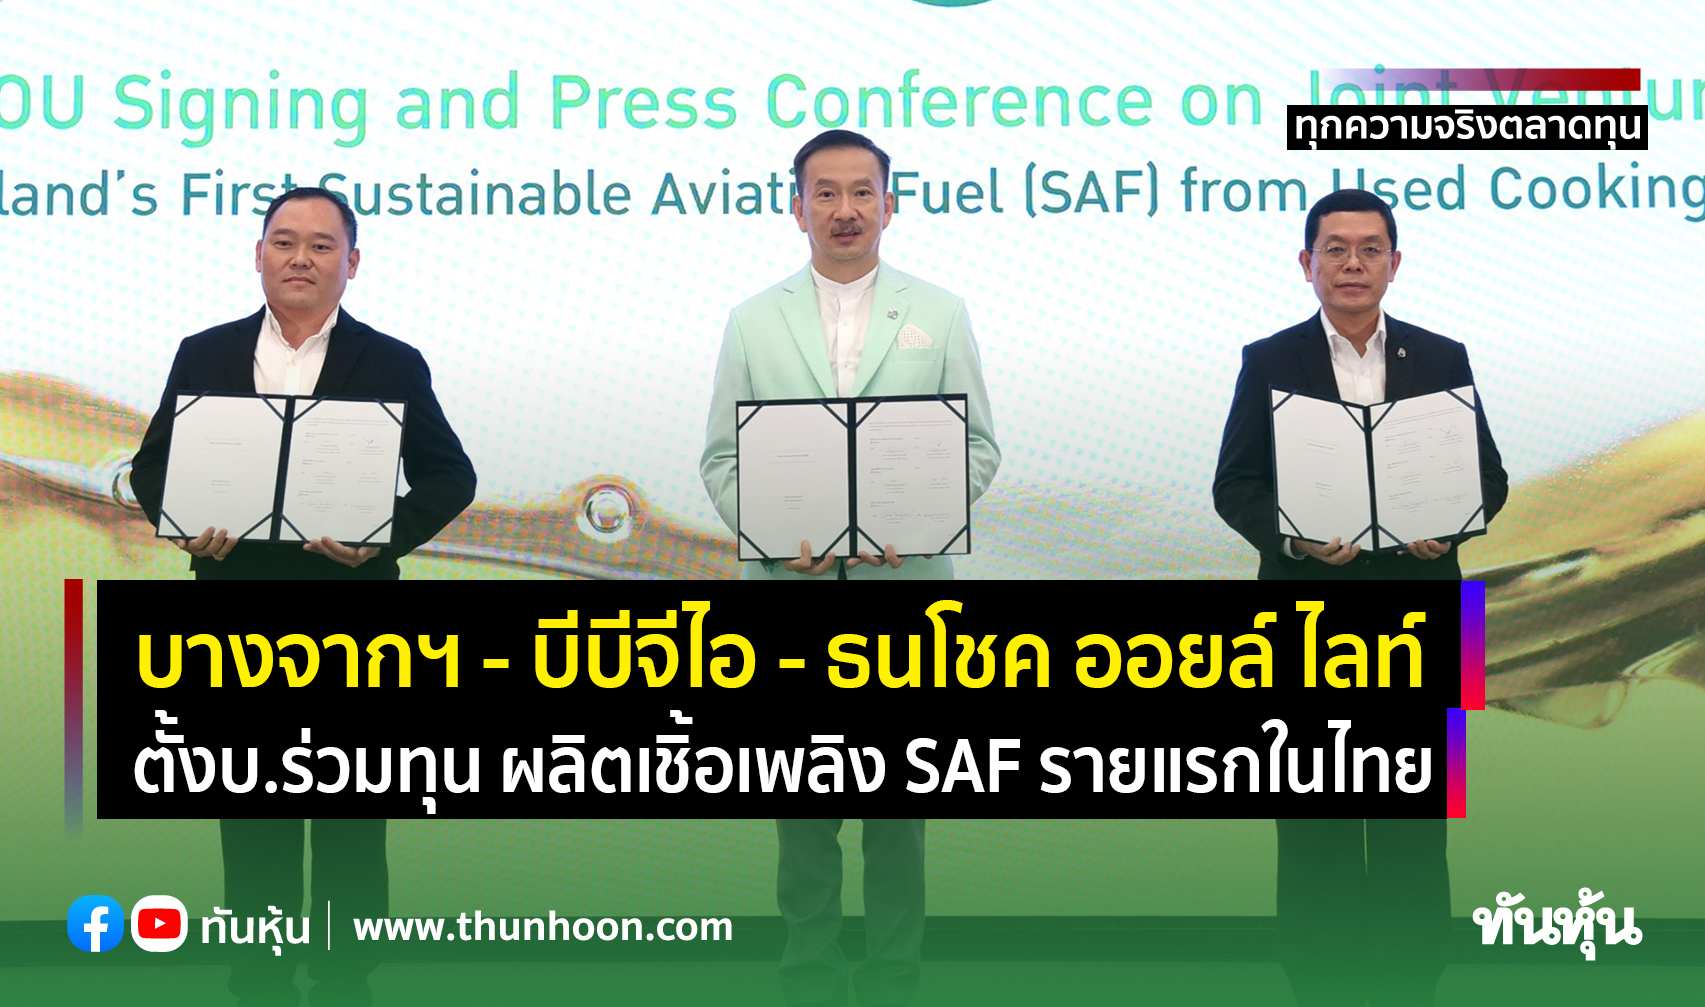 บางจากฯ - บีบีจีไอ - ธนโชค ออยล์ ไลท์ ตั้งบ.ร่วมทุน ผลิตเชิ้อเพลิง SAF รายแรกในไทย